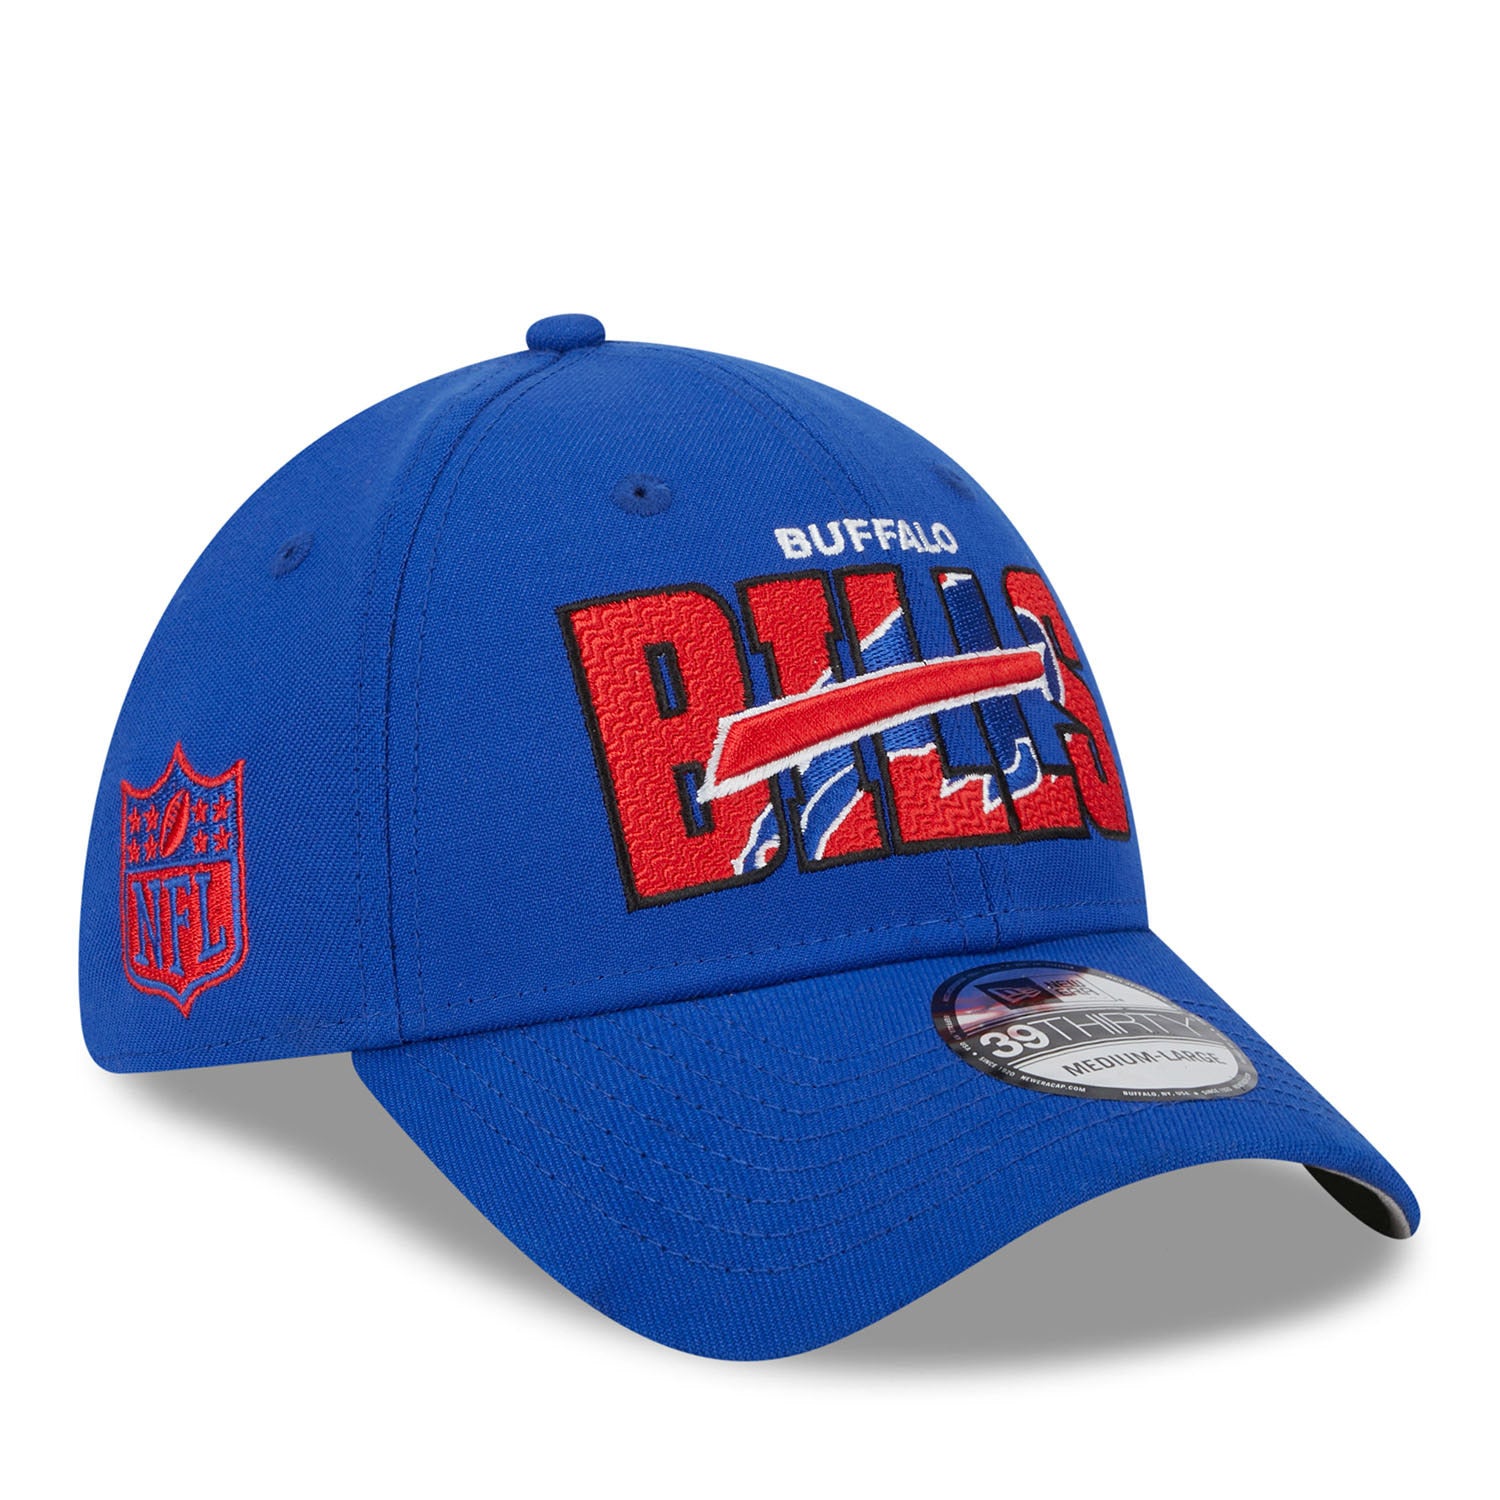 nfl shop bills hats